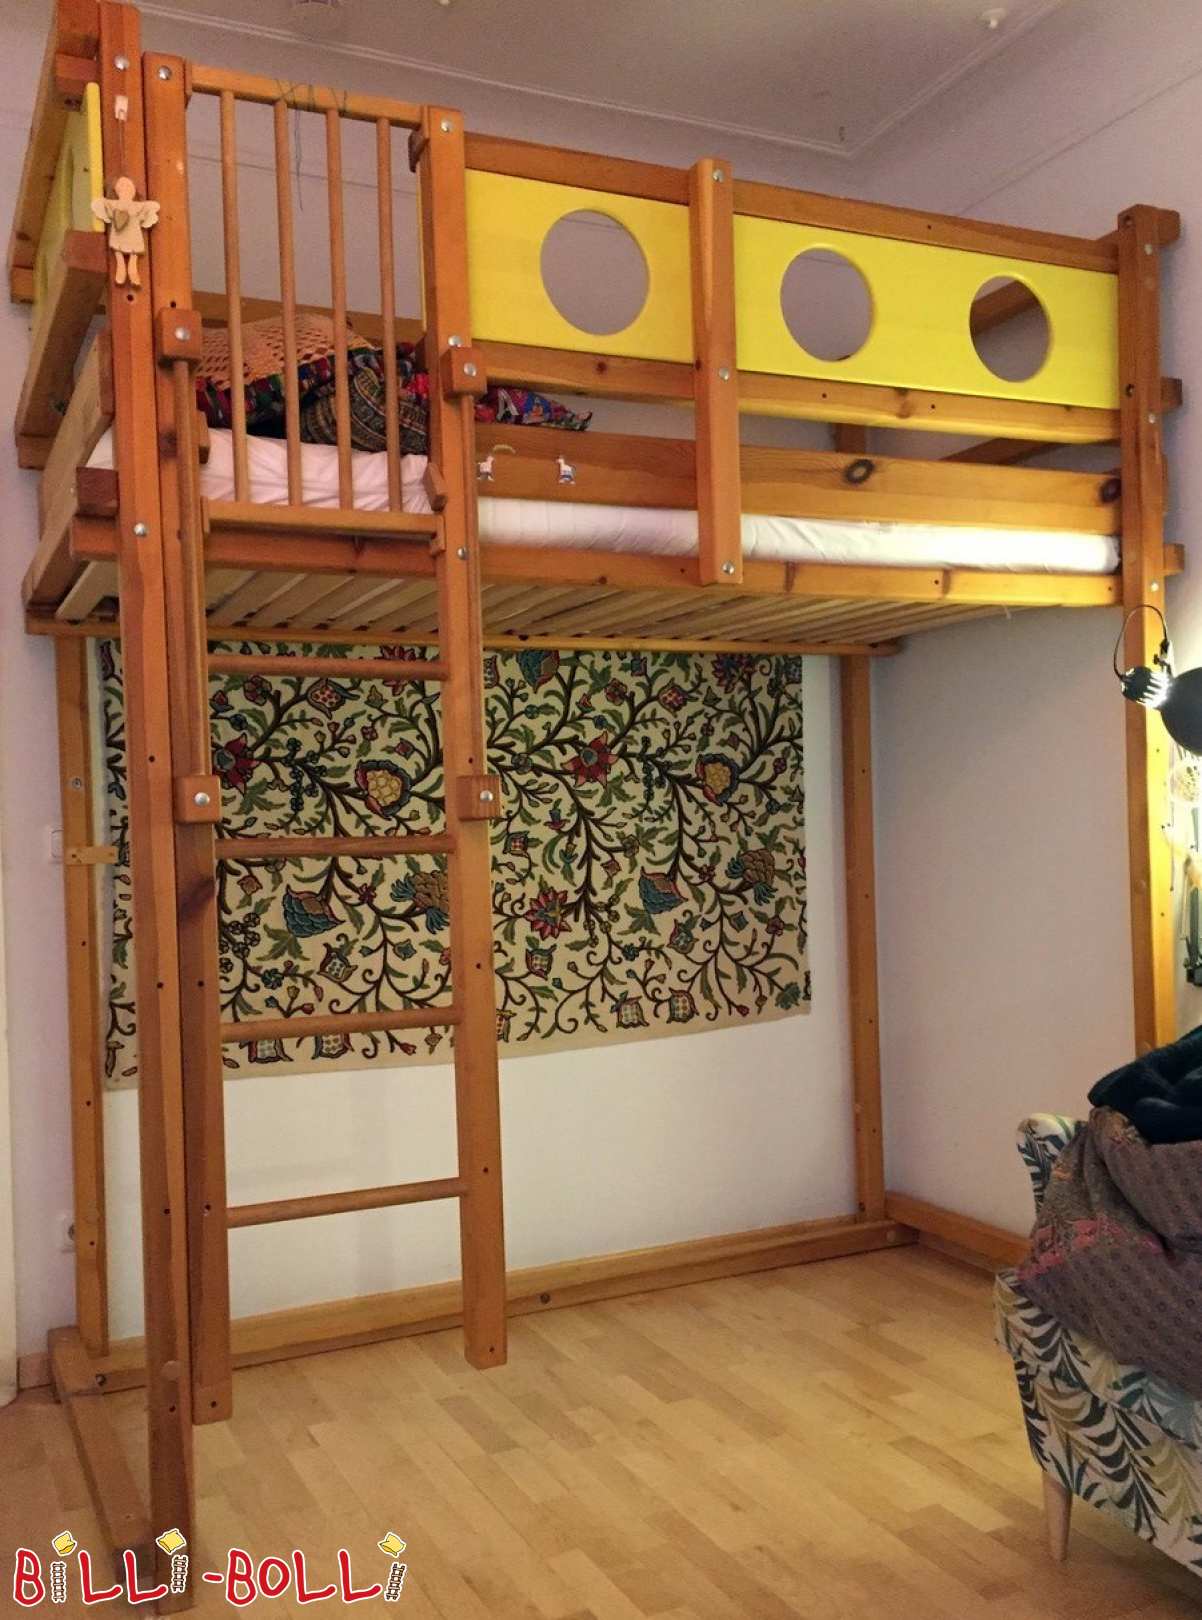 पाइन से बना मचान बिस्तर जो म्यूनिख में बच्चे के साथ बढ़ता है (कोटि: मचान बिस्तर का इस्तेमाल किया)